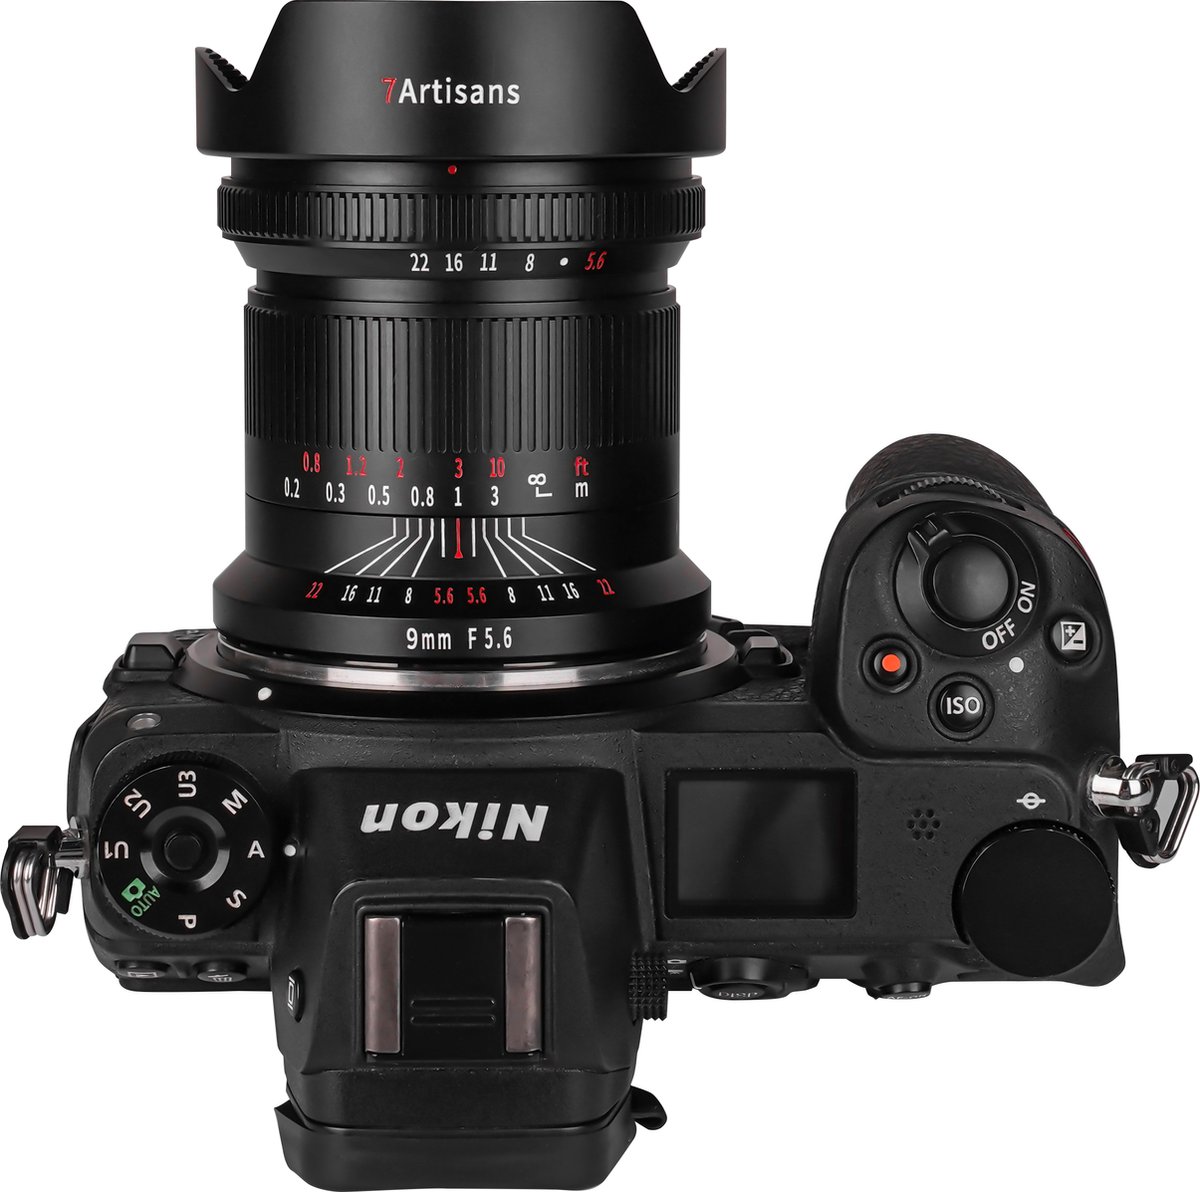 7artisans - Cameralens - 9mm F5.6 Nikon (Z-vatting) Full Frame, zwart